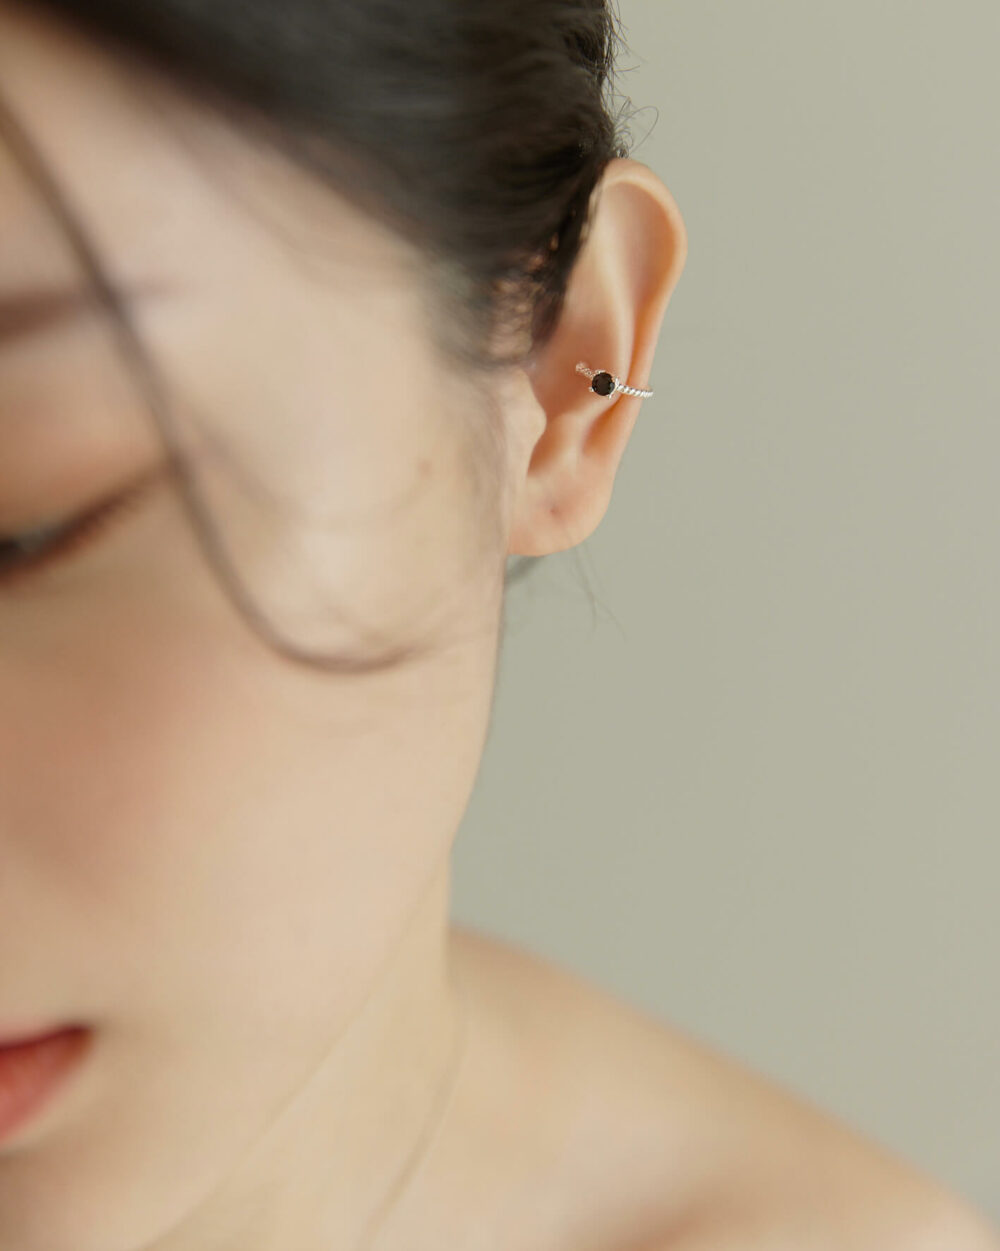 Eco安珂,韓國飾品,韓國耳環,韓國925純銀耳環,925純銀耳環,純銀耳骨夾,925純銀耳骨夾,925純銀寶石耳骨夾